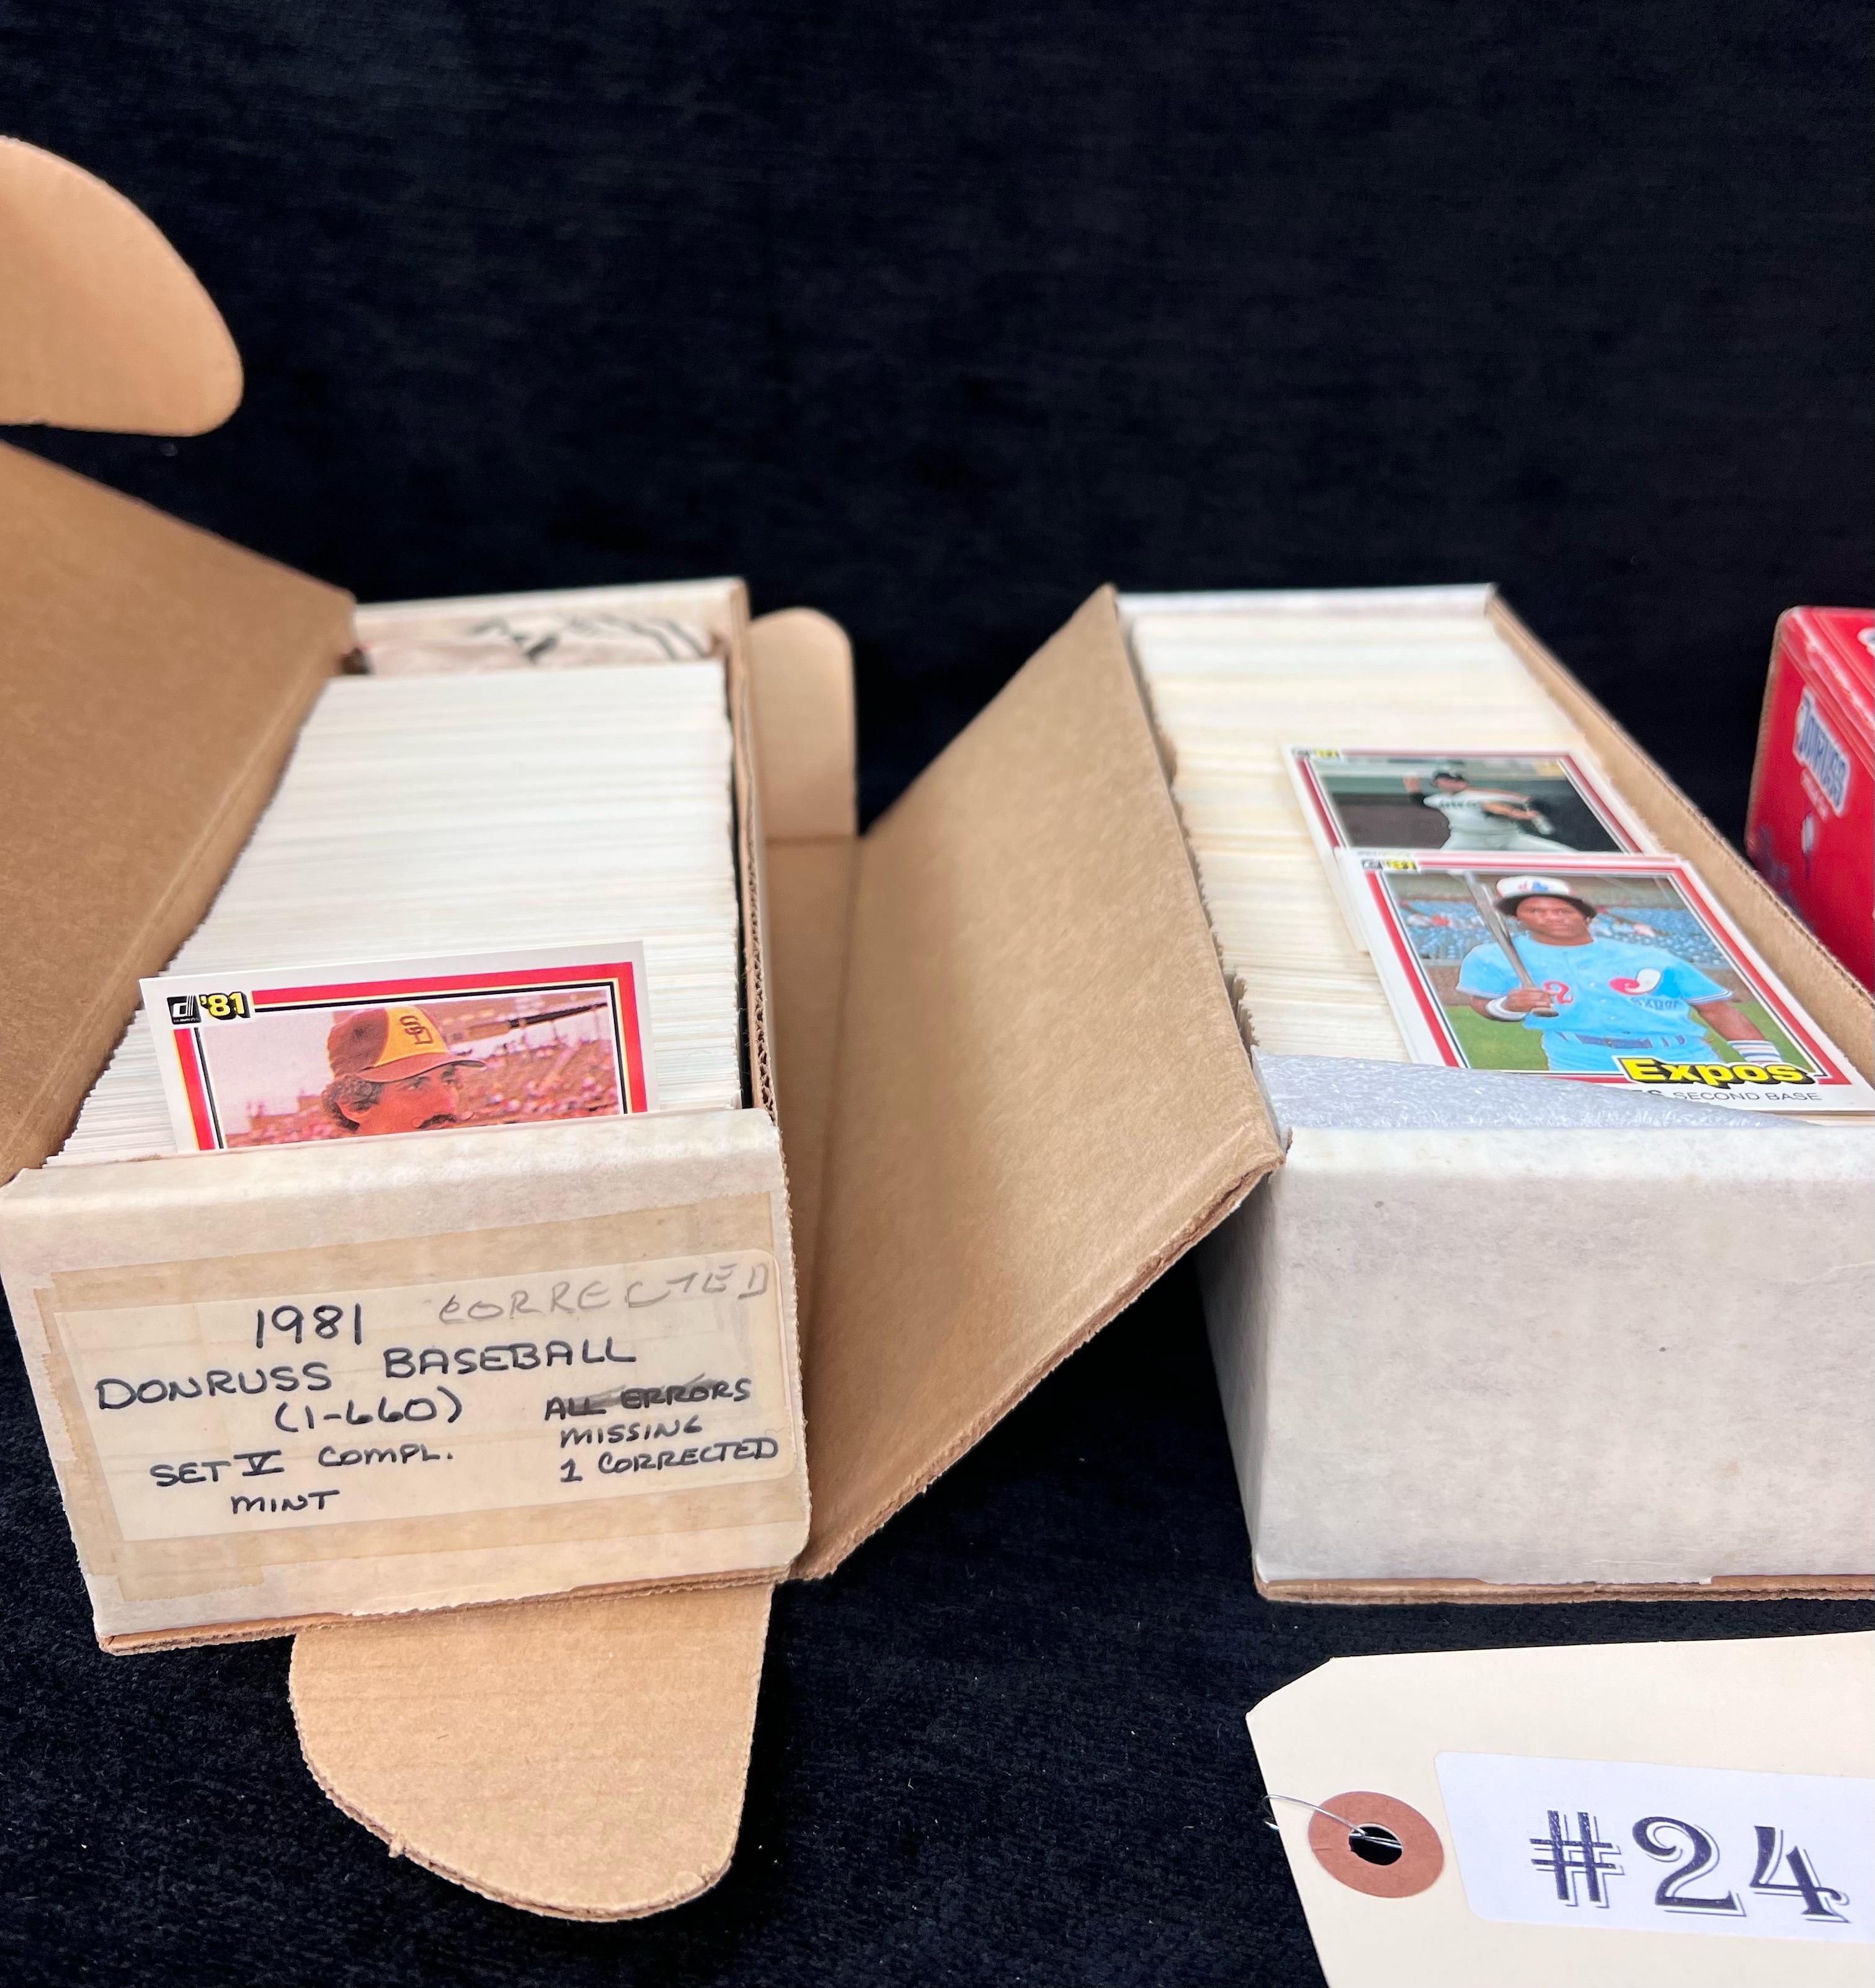 4 - BOXES DONRUSS BASEBALL CARD SETS 1981 AND 1989